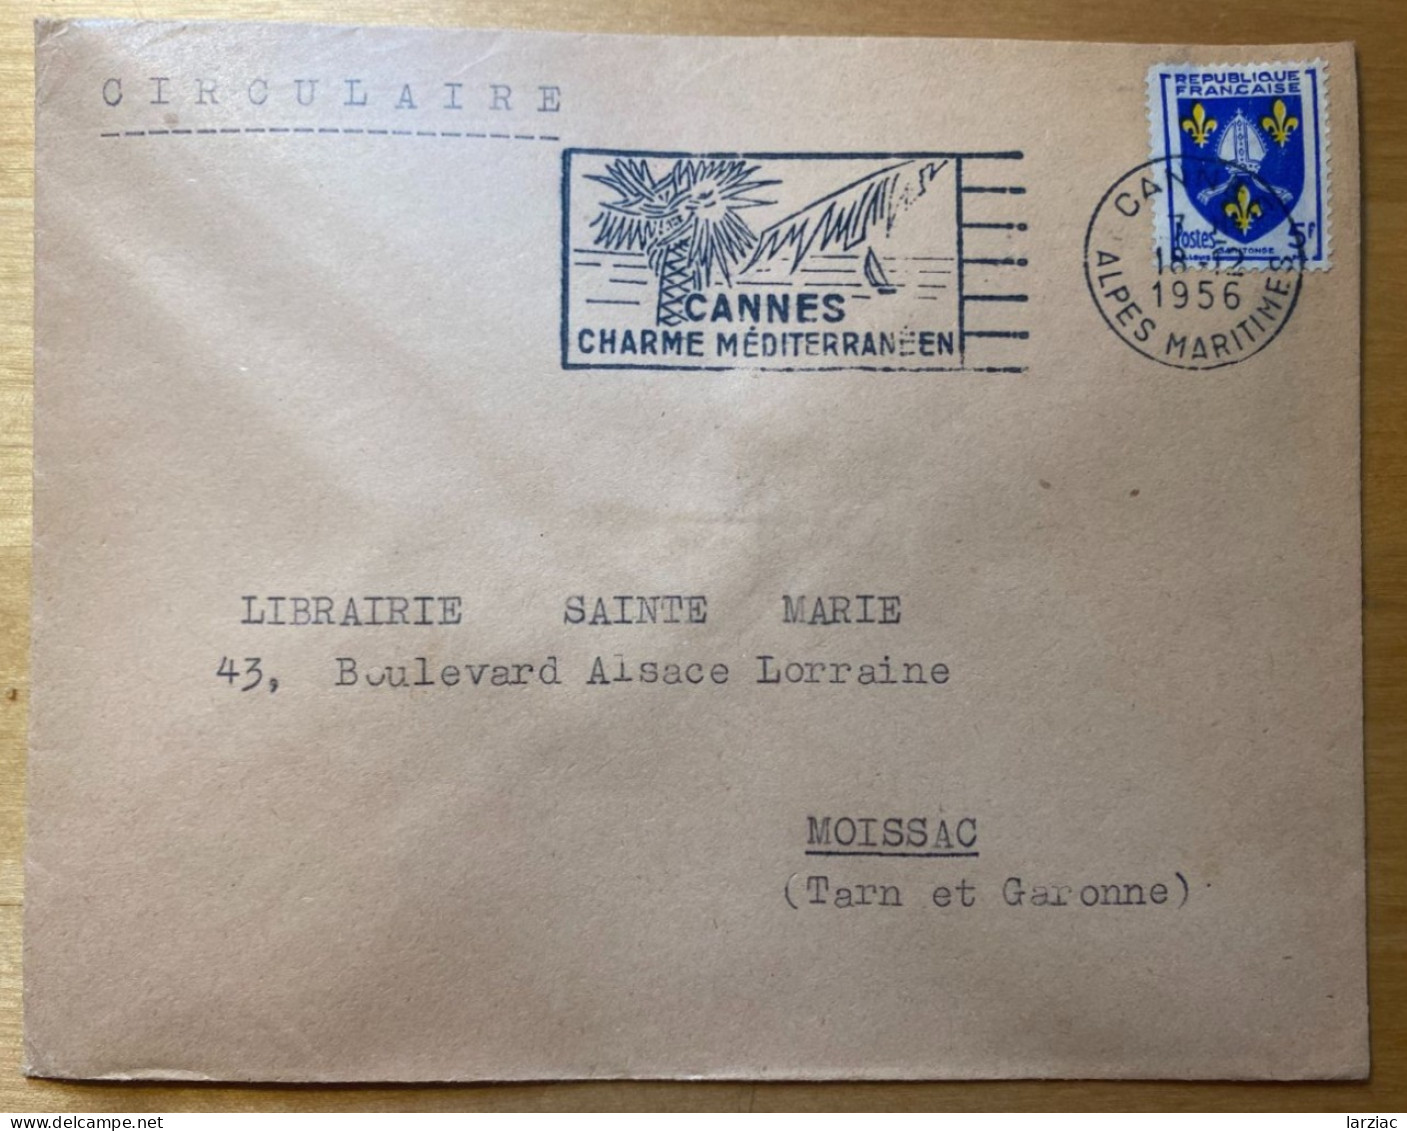 Enveloppe Affranchie Blason Saintonge Oblitération Flamme Cannes Alpes Maritimes 1956 Tarif Circulaire - Postal Rates